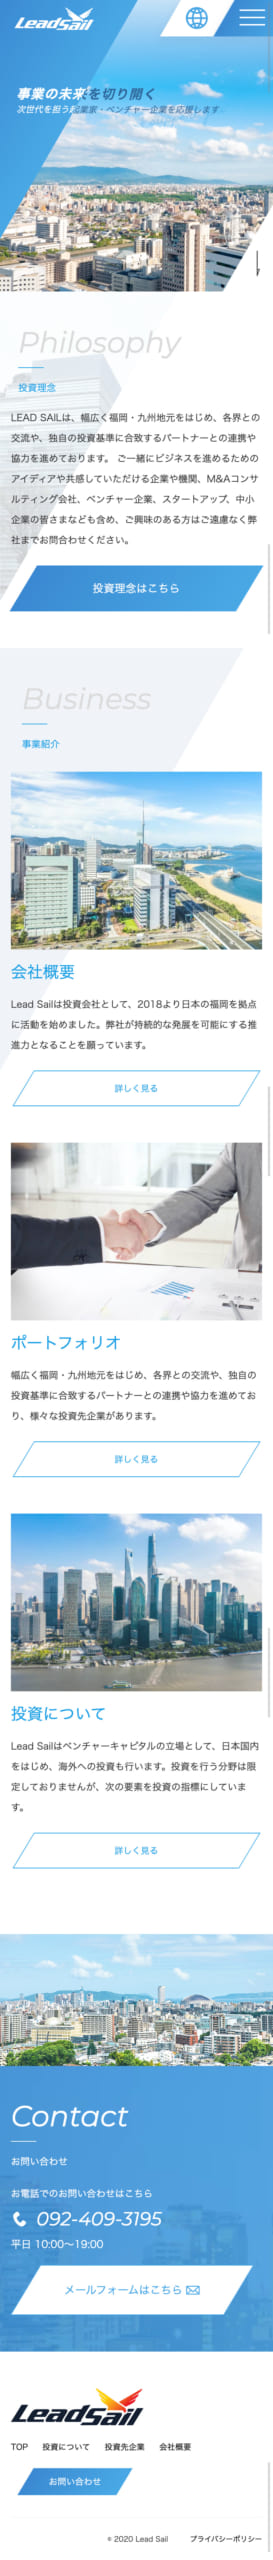 株式会社Lead Sail様 mobile image